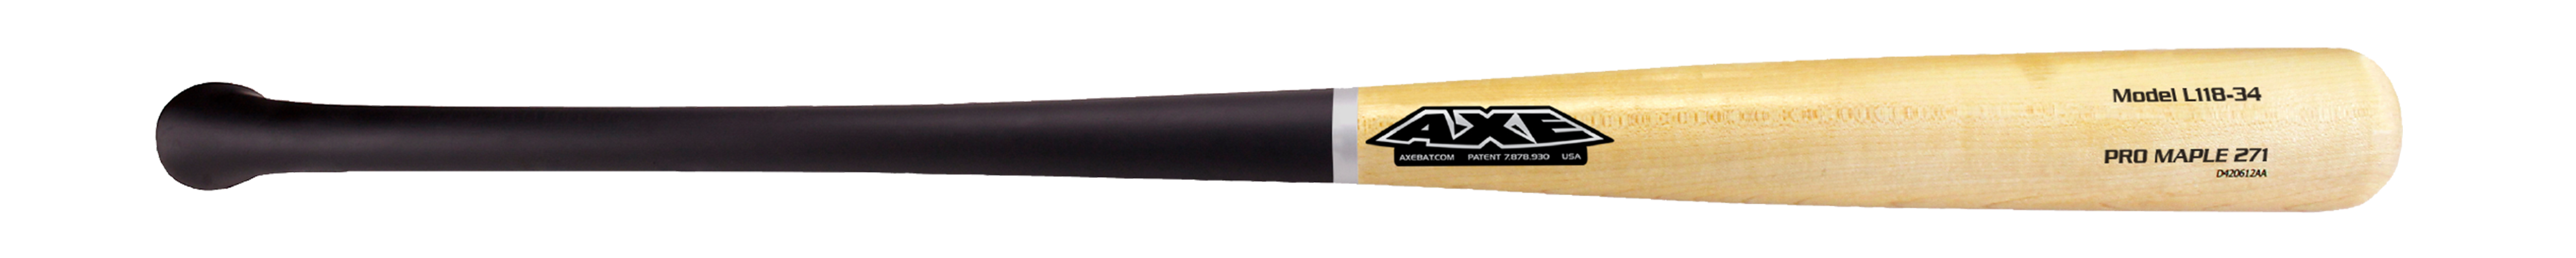 Axe Pro Hard Maple L118 Baseball Bat